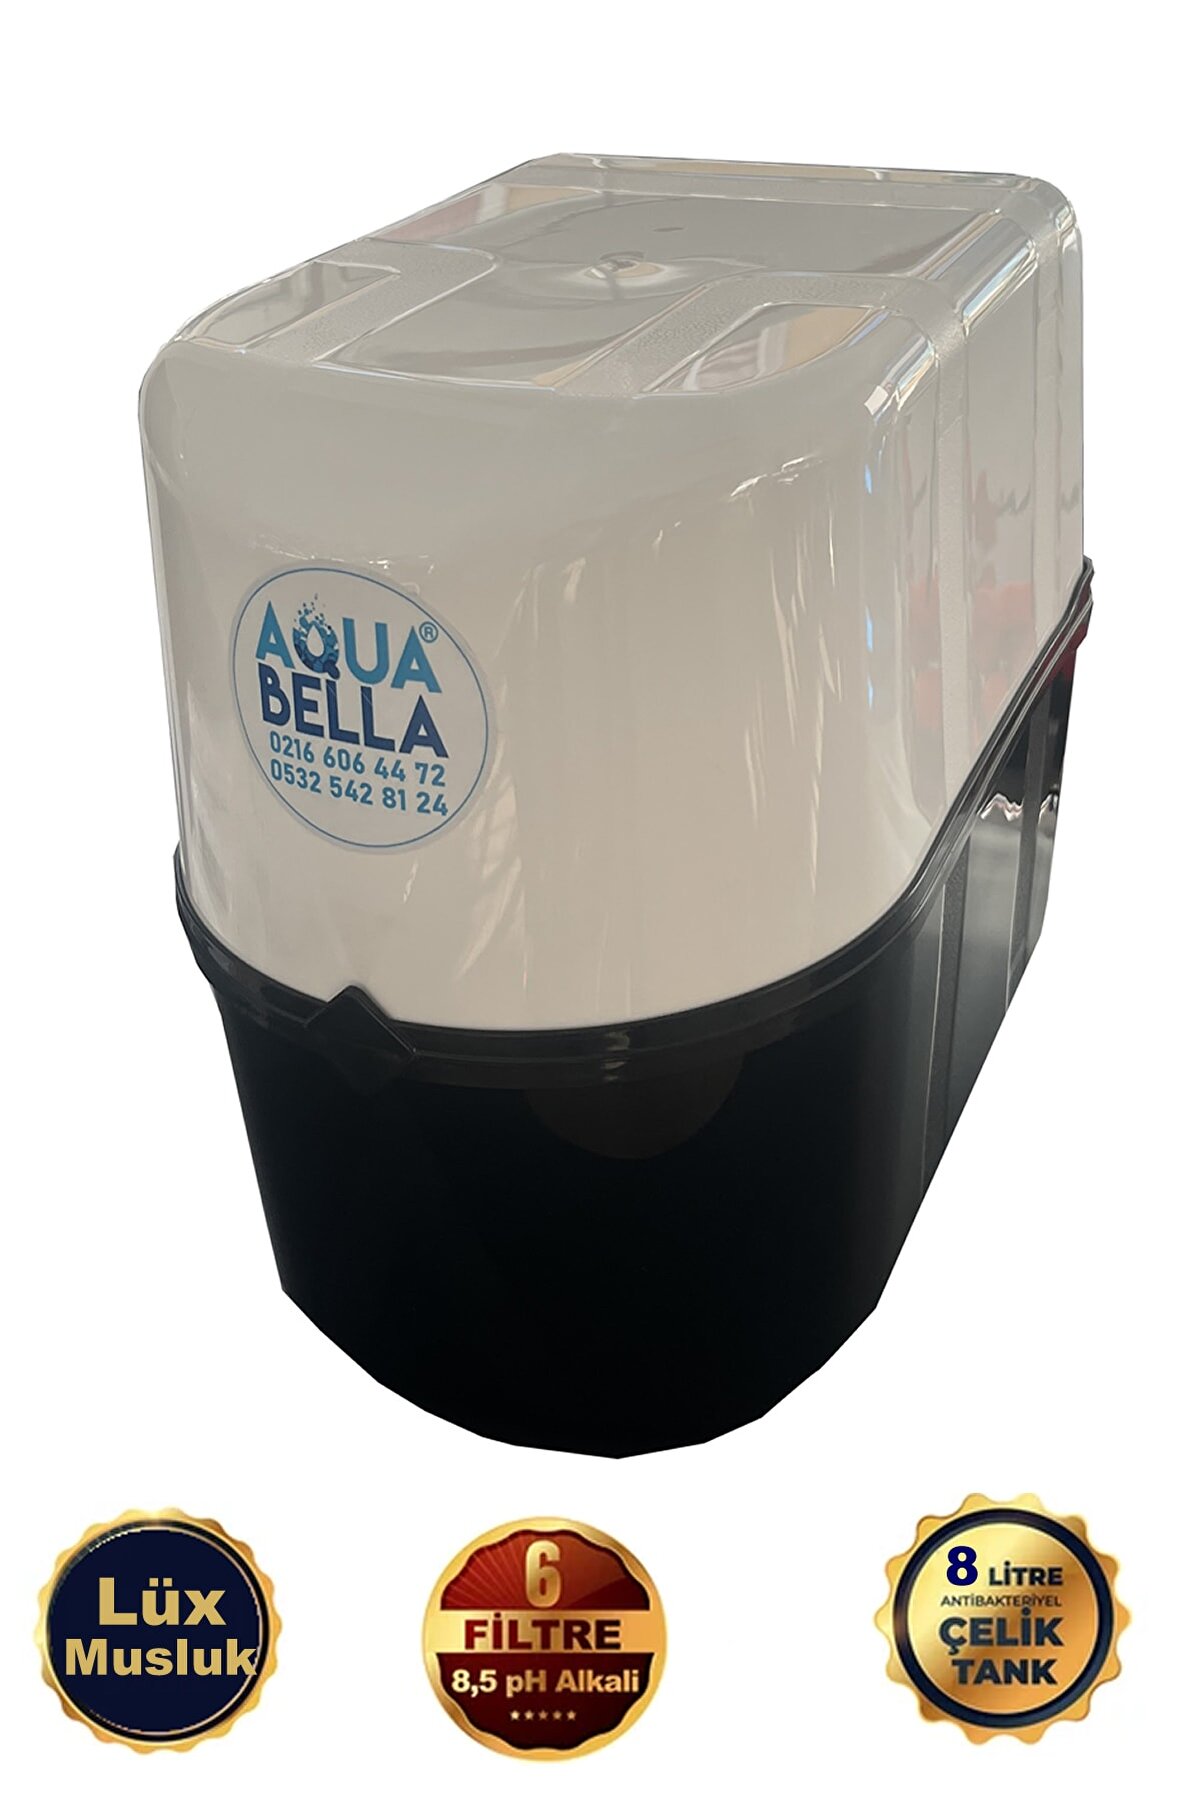 AQUA BELLA Gold Crystal 10 Aşamalı Çelik Tanklı Su Arıtma Cihazı